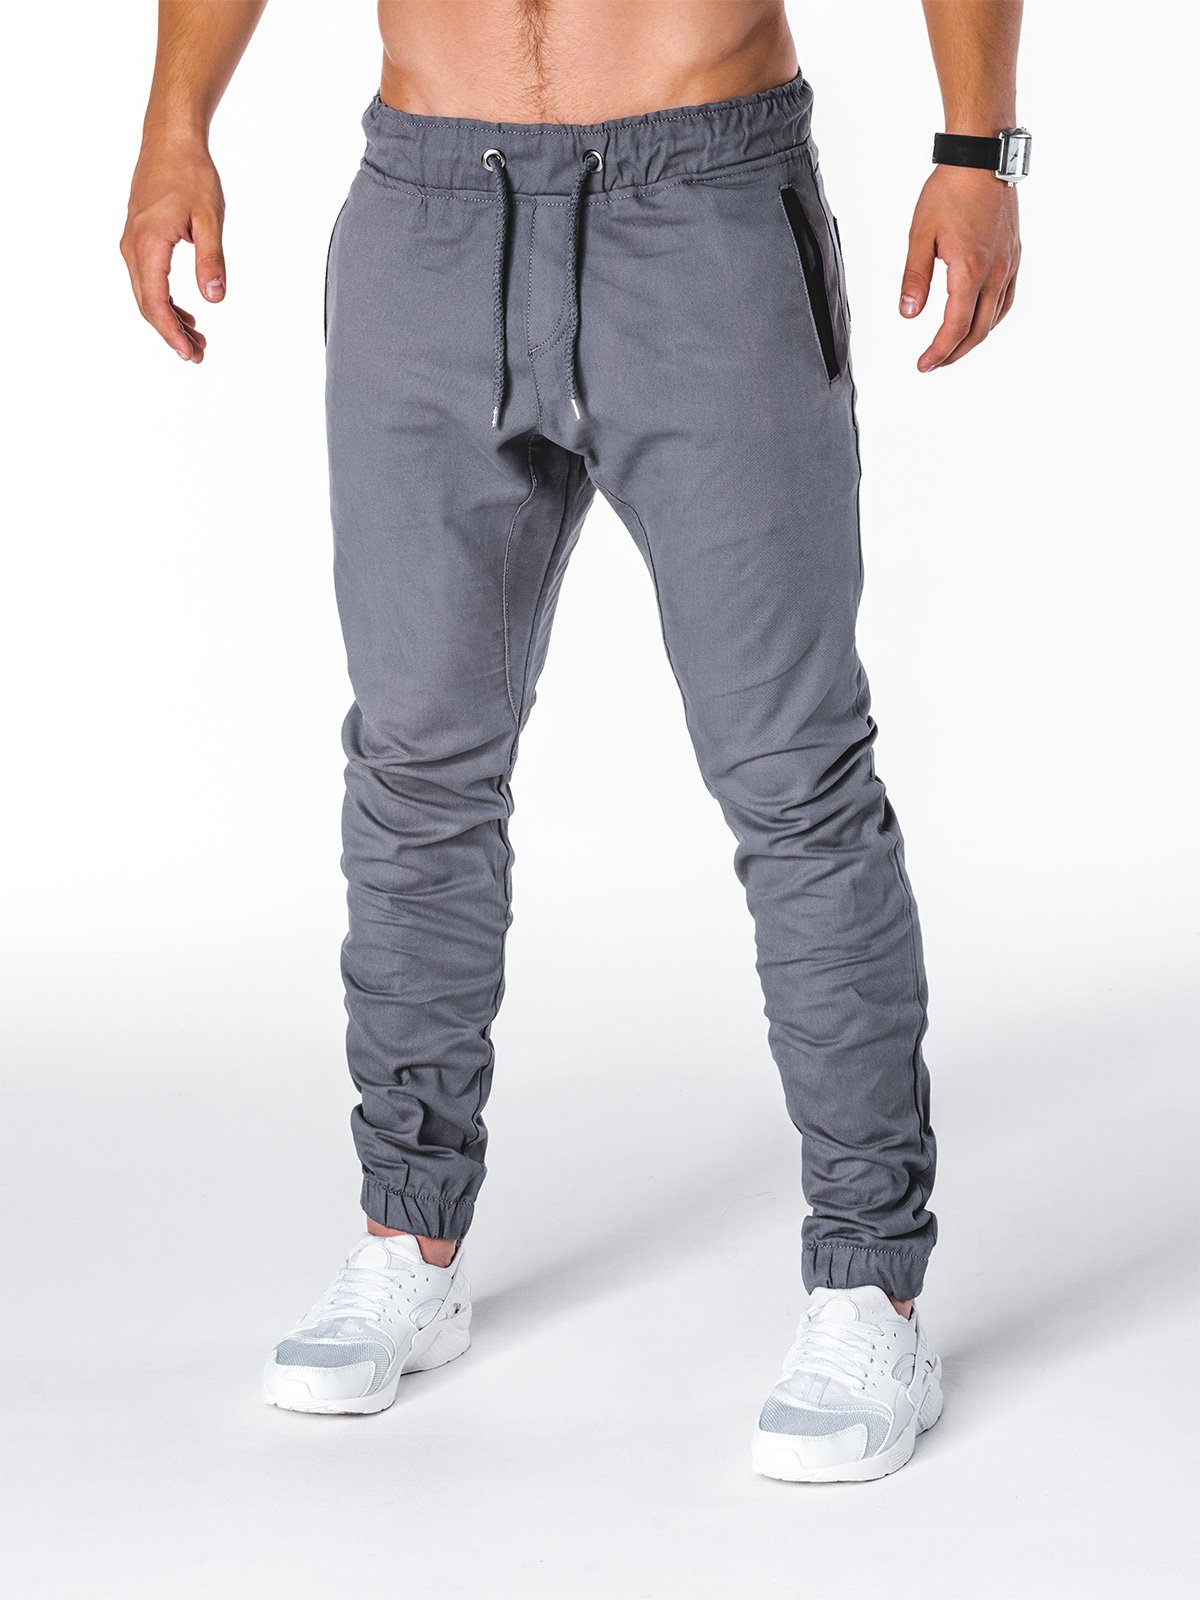 Men's pants joggers - grey P713 | MODONE wholesale - Clothing For Men